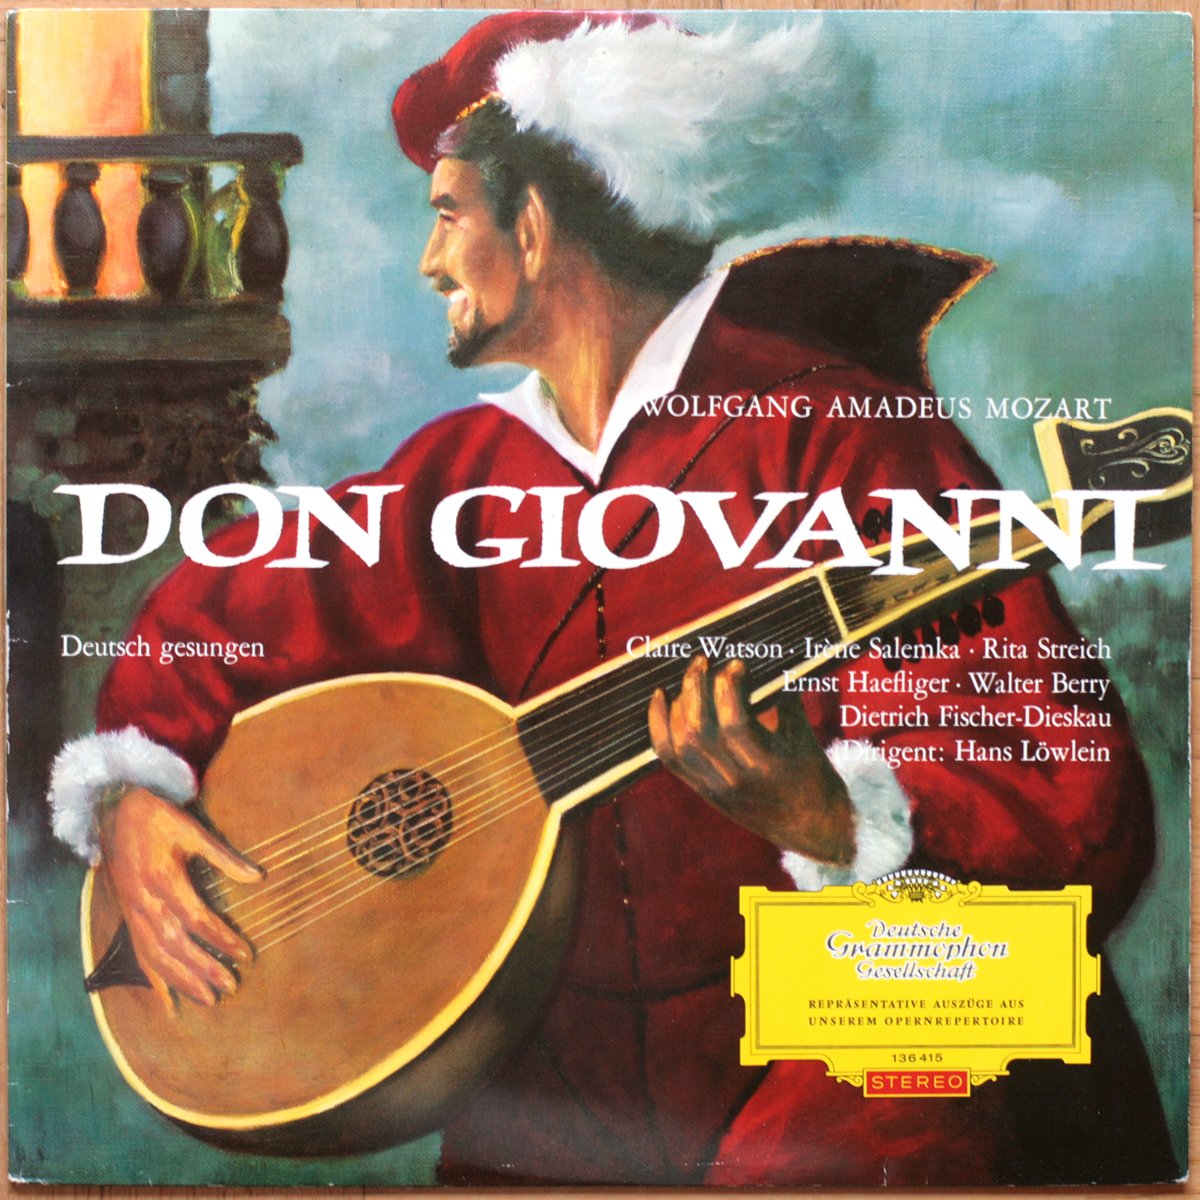 DG | Deutsche Grammophon | Records | LP | Vinyl | Label Guide | Références